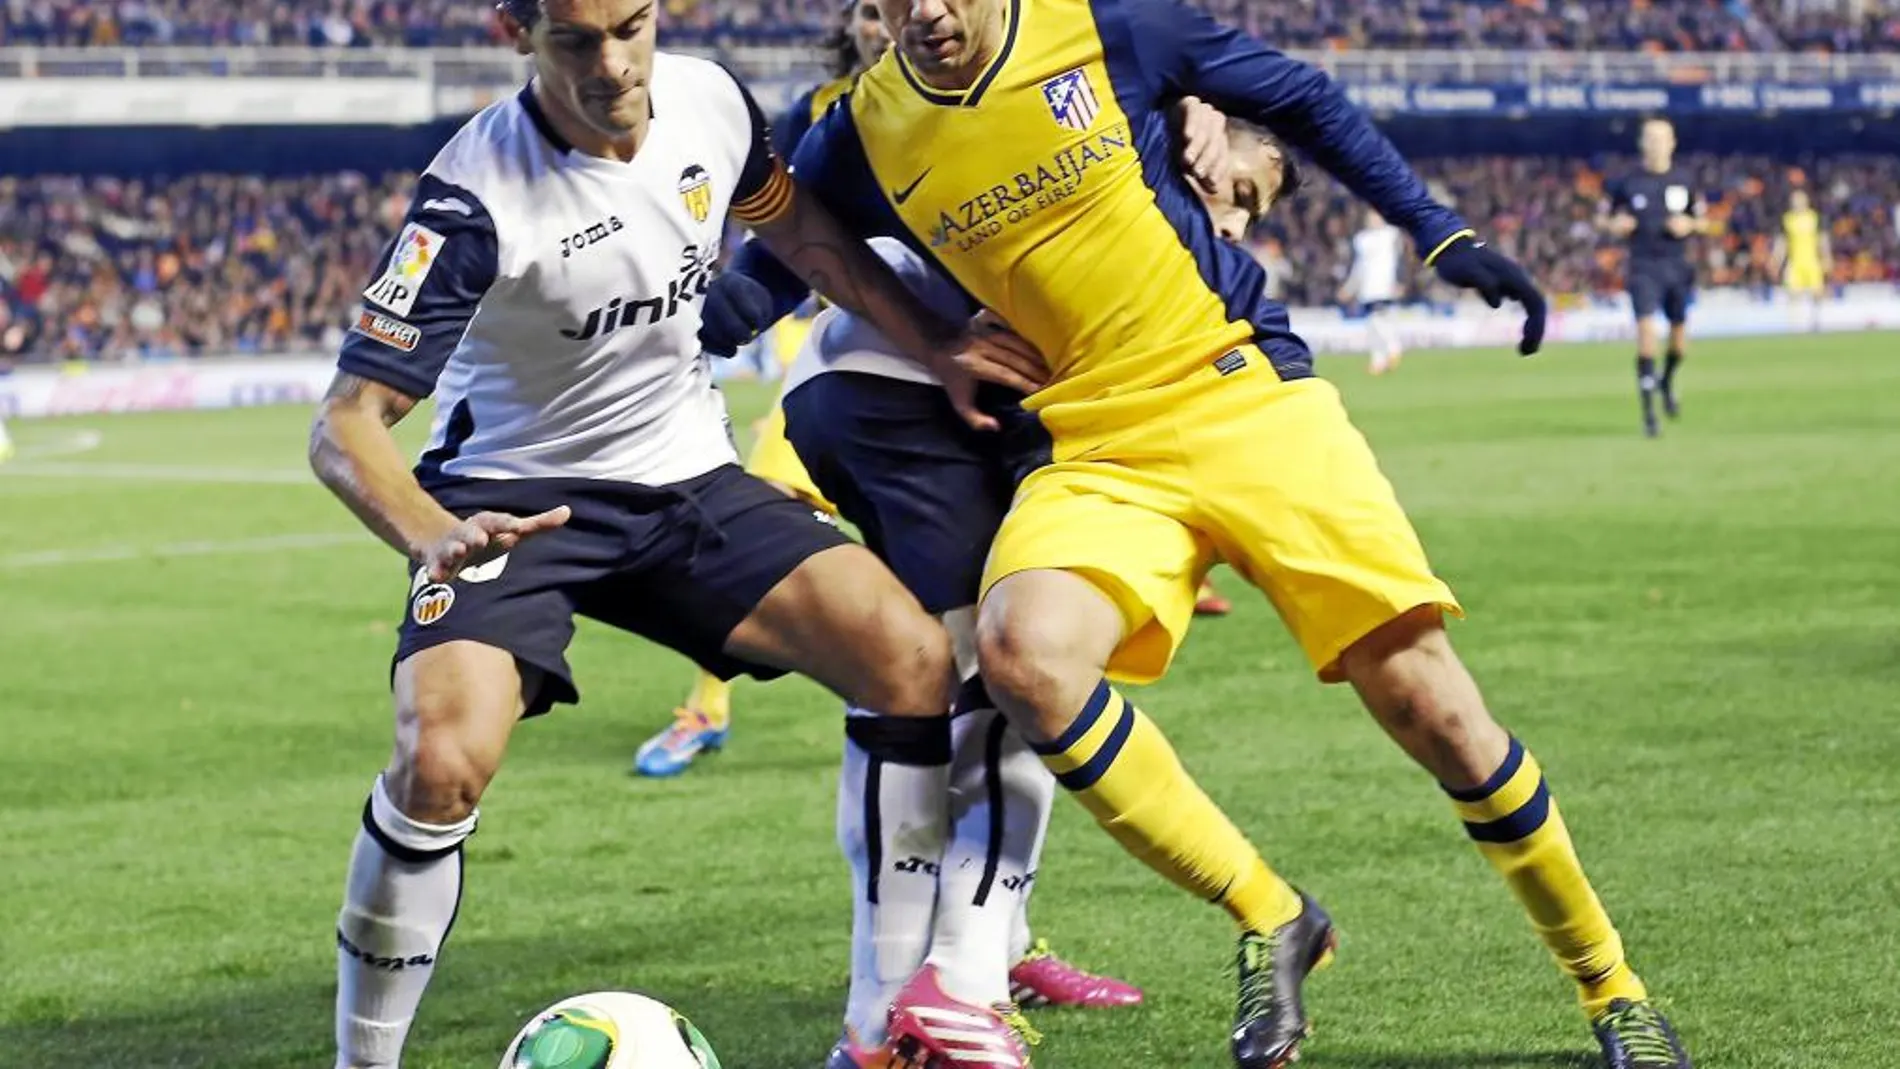 Diego Costa pugna por un balón con Ricardo Costa. El partido fue trabado